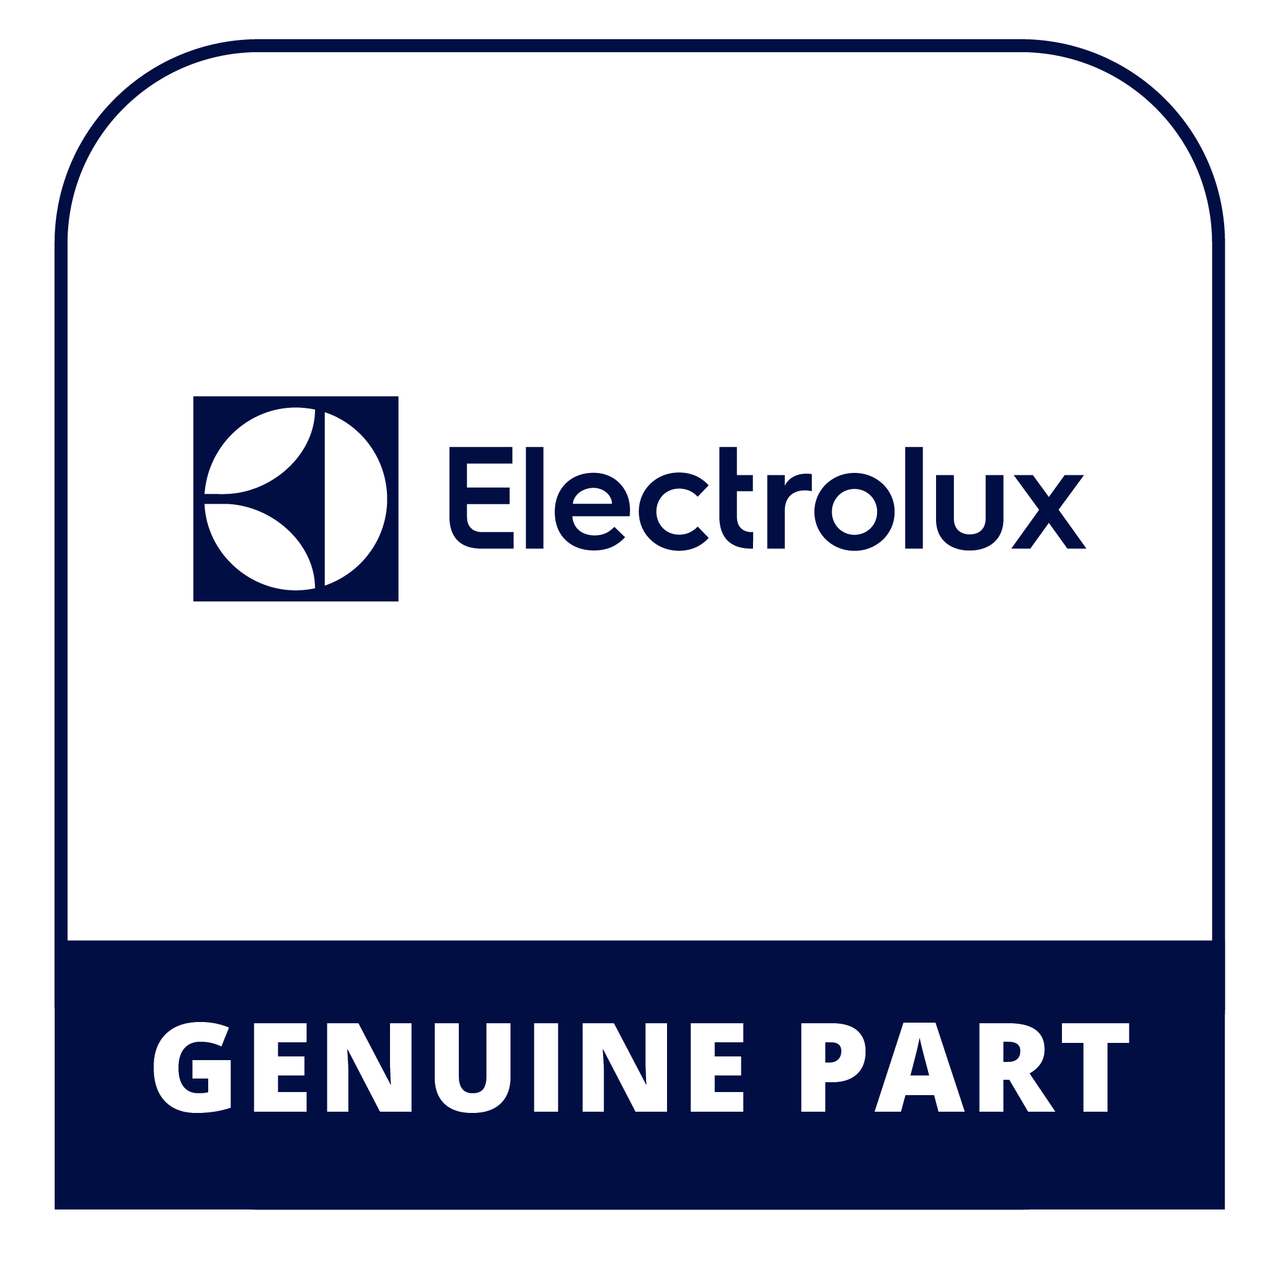 Frigidaire - Electrolux 5304458140 Power Cable Set - Genuine Electrolux Part